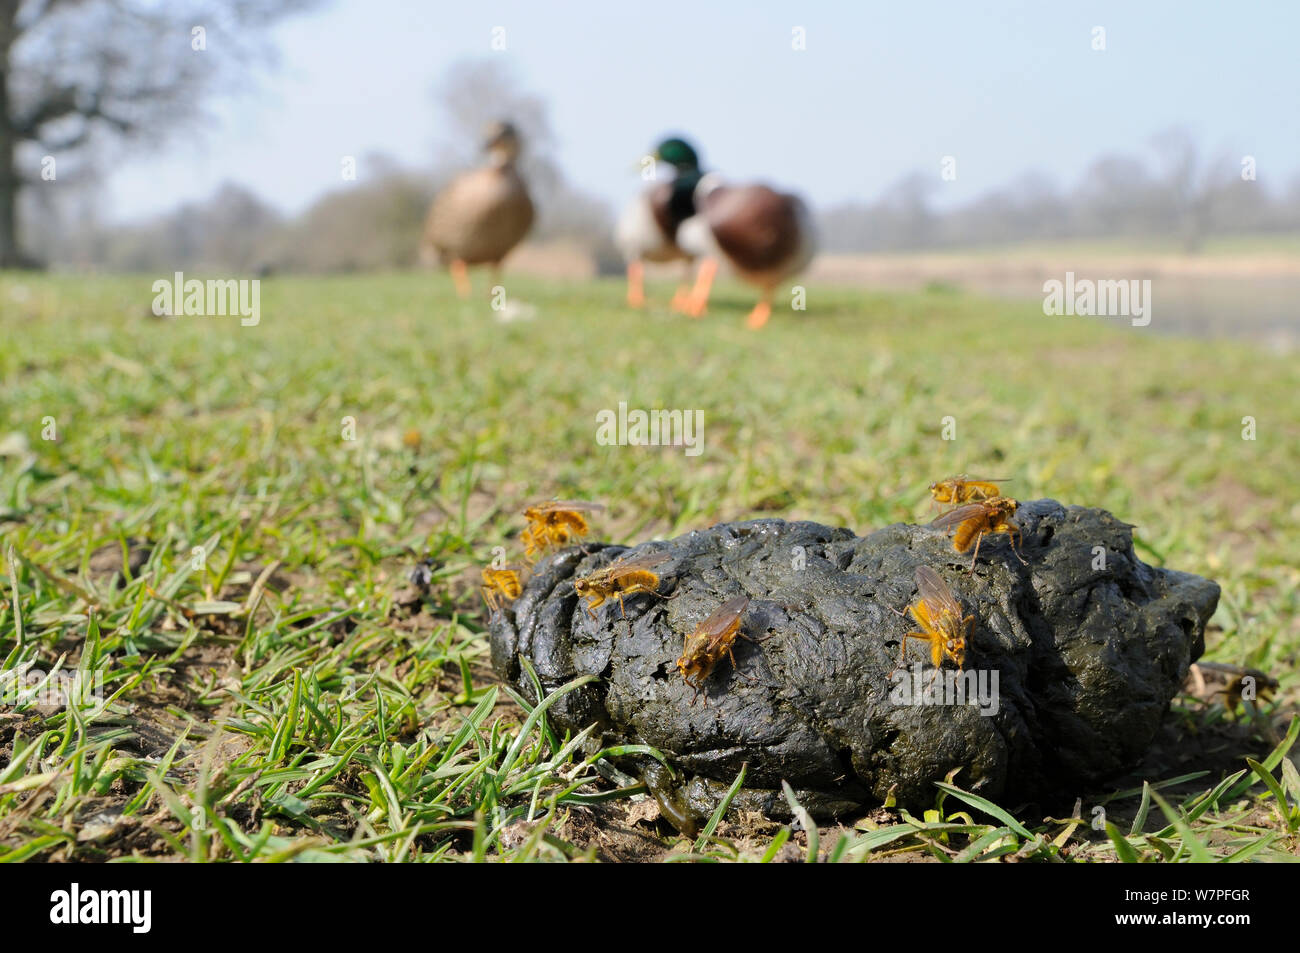 Mann Gelb Mist fliegt (Scathophaga Stercoraria) warten auf Schafe Mist für Frauen anzukommen, mit Stockenten (Anas platyrhynchos) und einem See im Hintergrund, Wiltshire, UK, März. Stockfoto